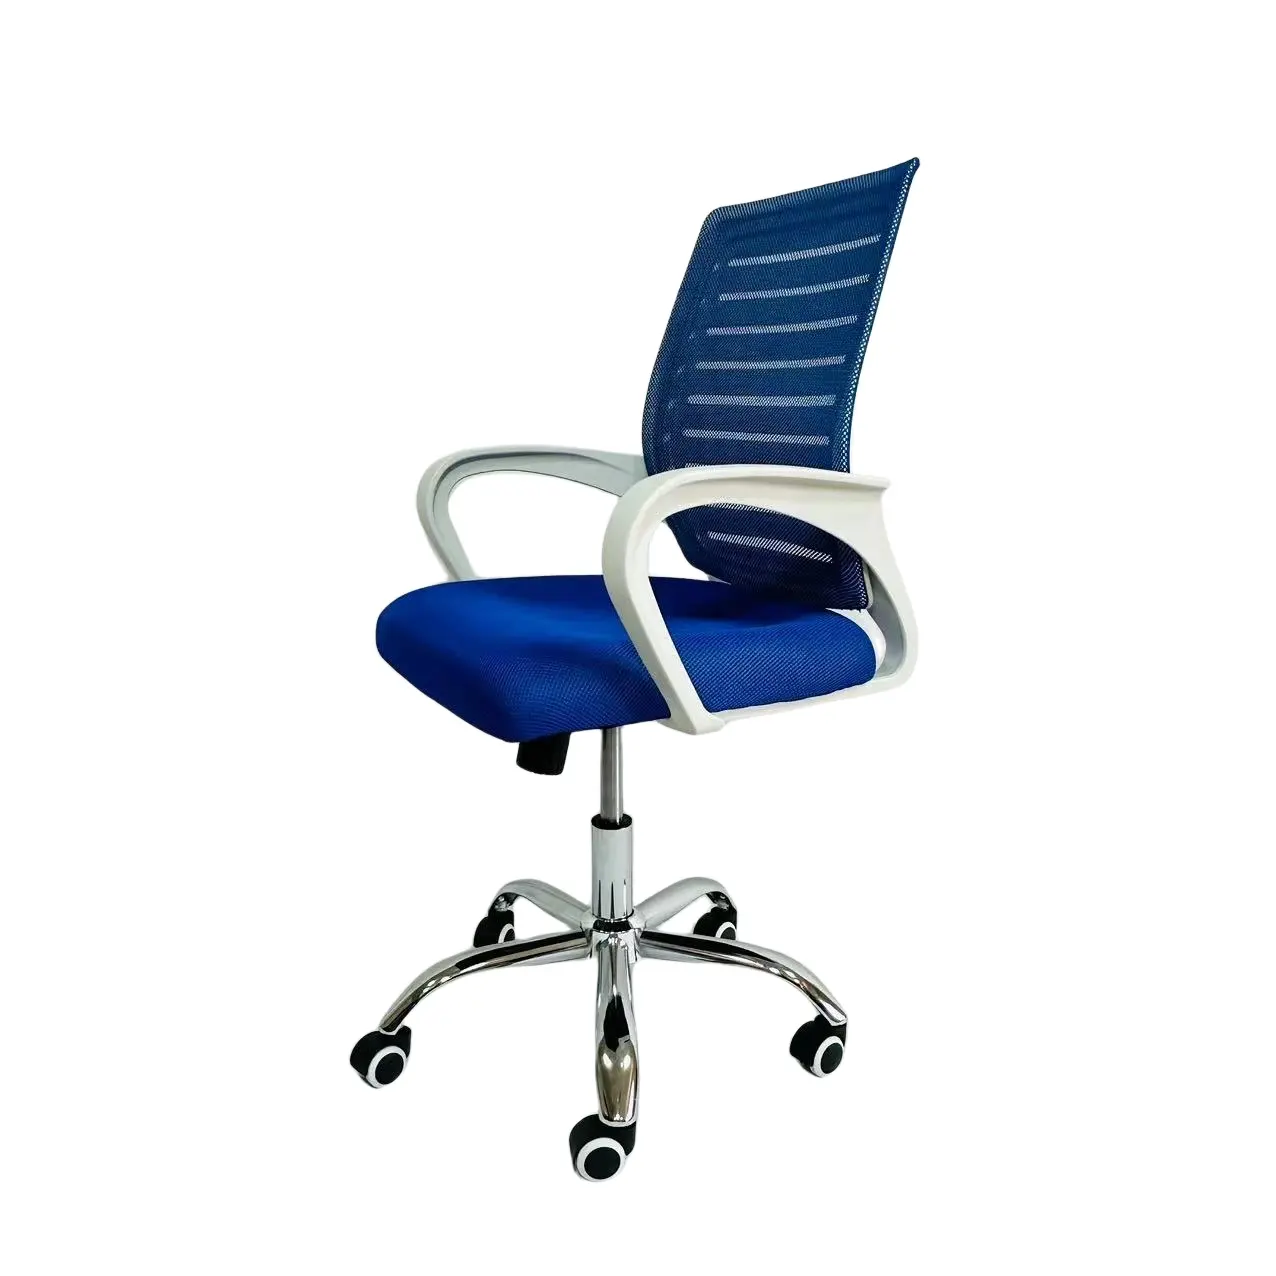 Silla giratoria de cuero líder silla de oficina con ruedas de lujo de buena calidad